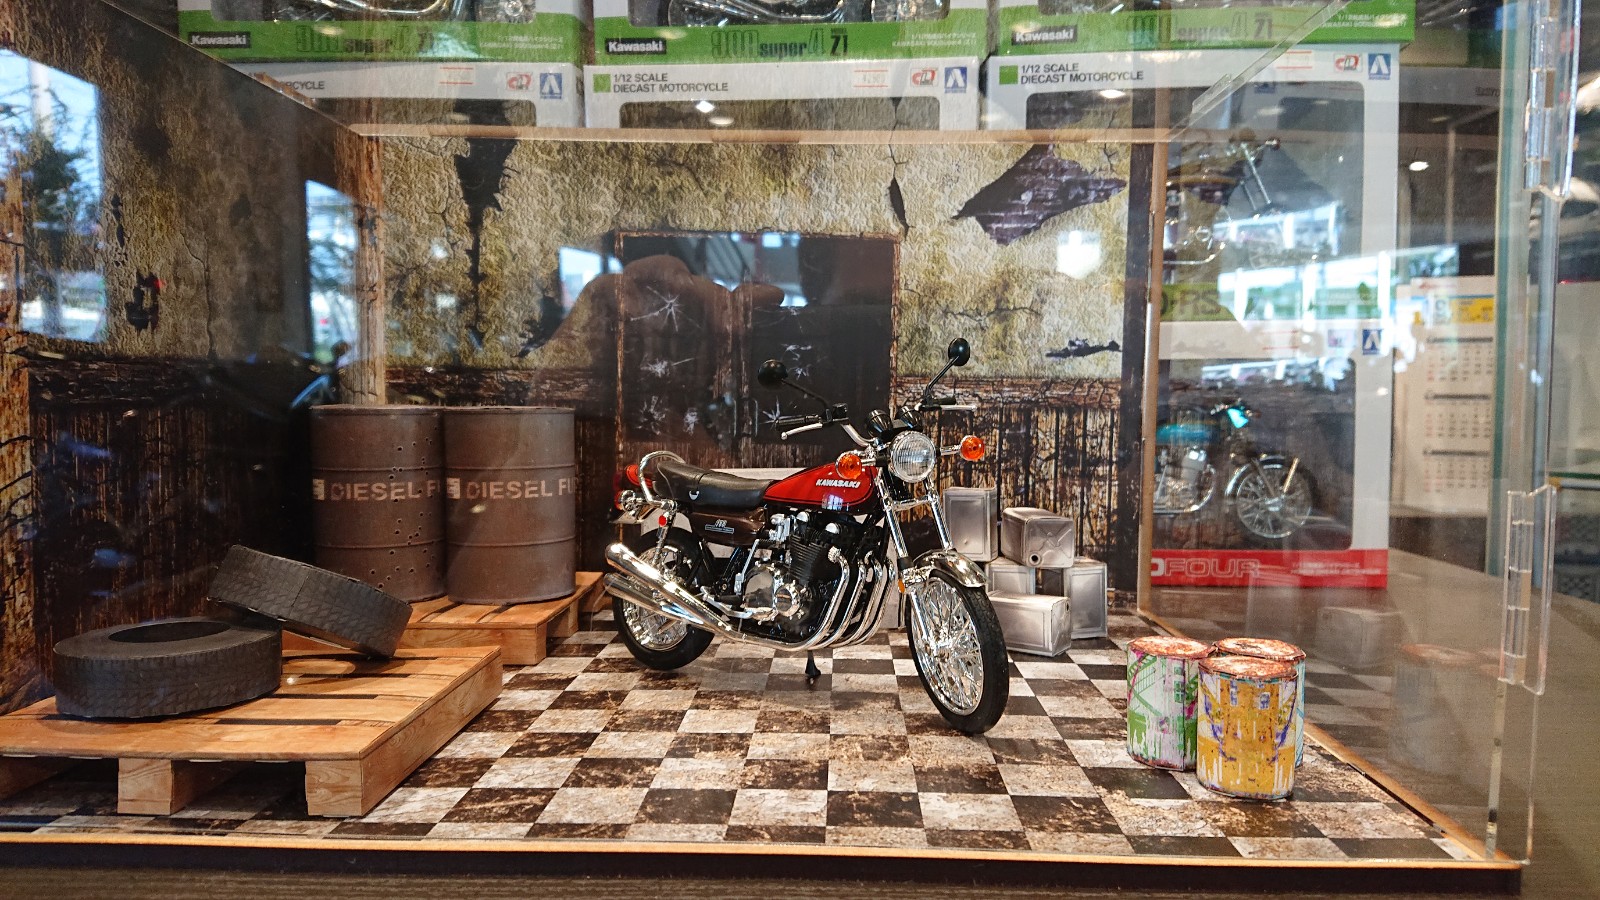 ジオラマ展示始めました 最新情報 U Media ユーメディア 中古バイク 新車バイク探しの決定版 神奈川 東京でバイク探すならユーメディア